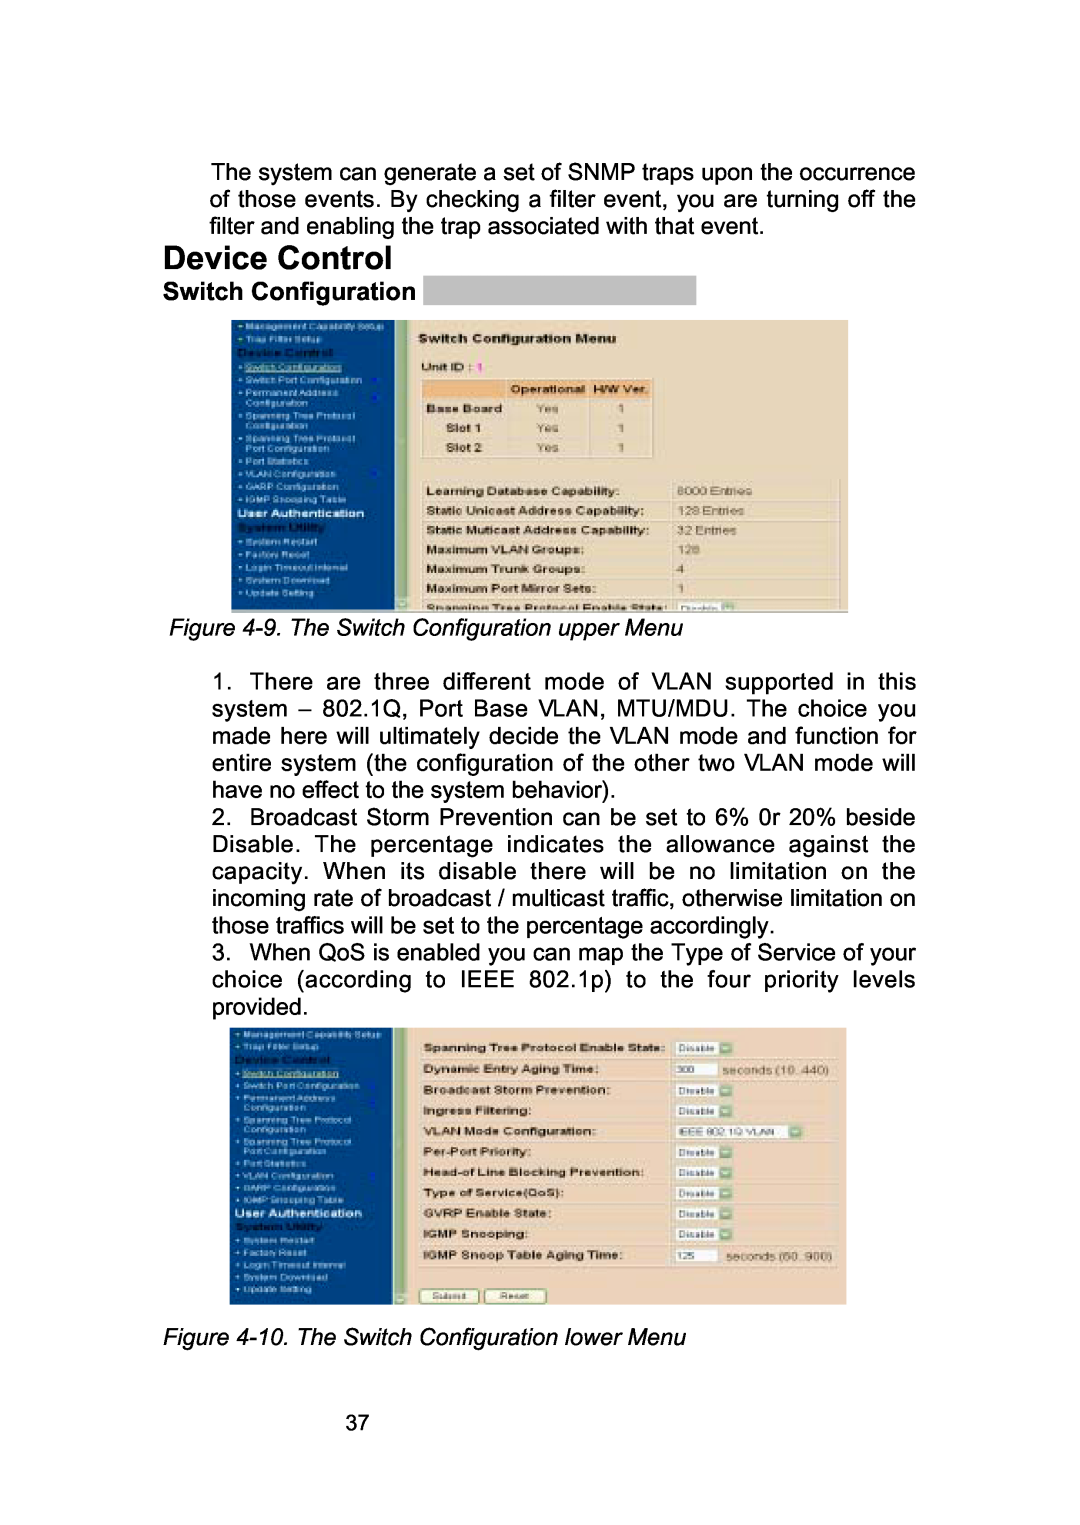 LevelOne GSW-2490TXM Device Control, 9. The Switch Configuration upper Menu, 10. The Switch Configuration lower Menu 